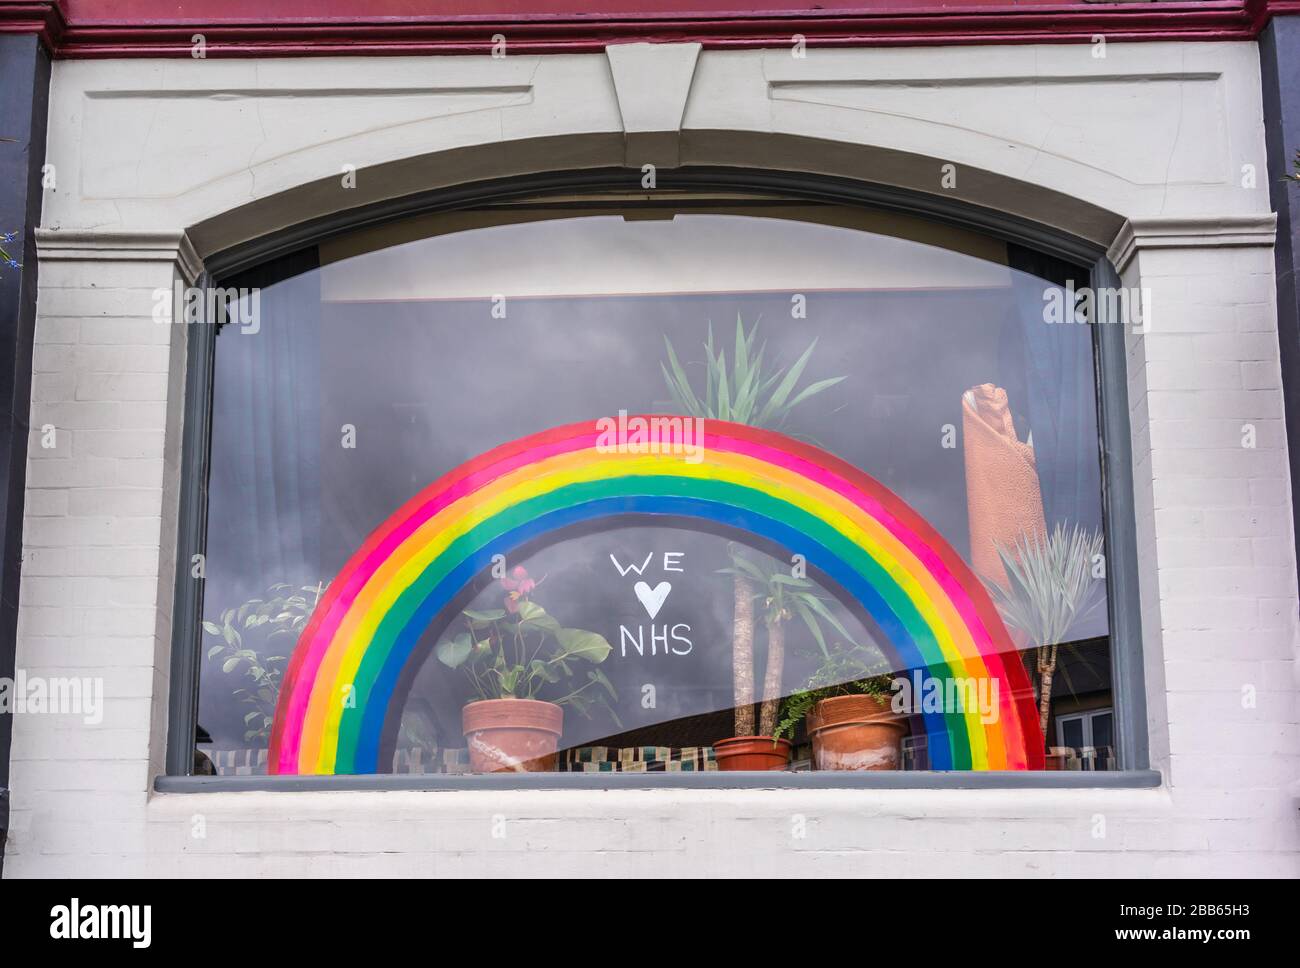 Ein Fenster mit einem Regenbogen und dem Zitat "wir lieben NHS", das die Hoffnung während der Coronavirus Pandemie im März 2020, Southampton, England, Großbritannien symbolisiert Stockfoto